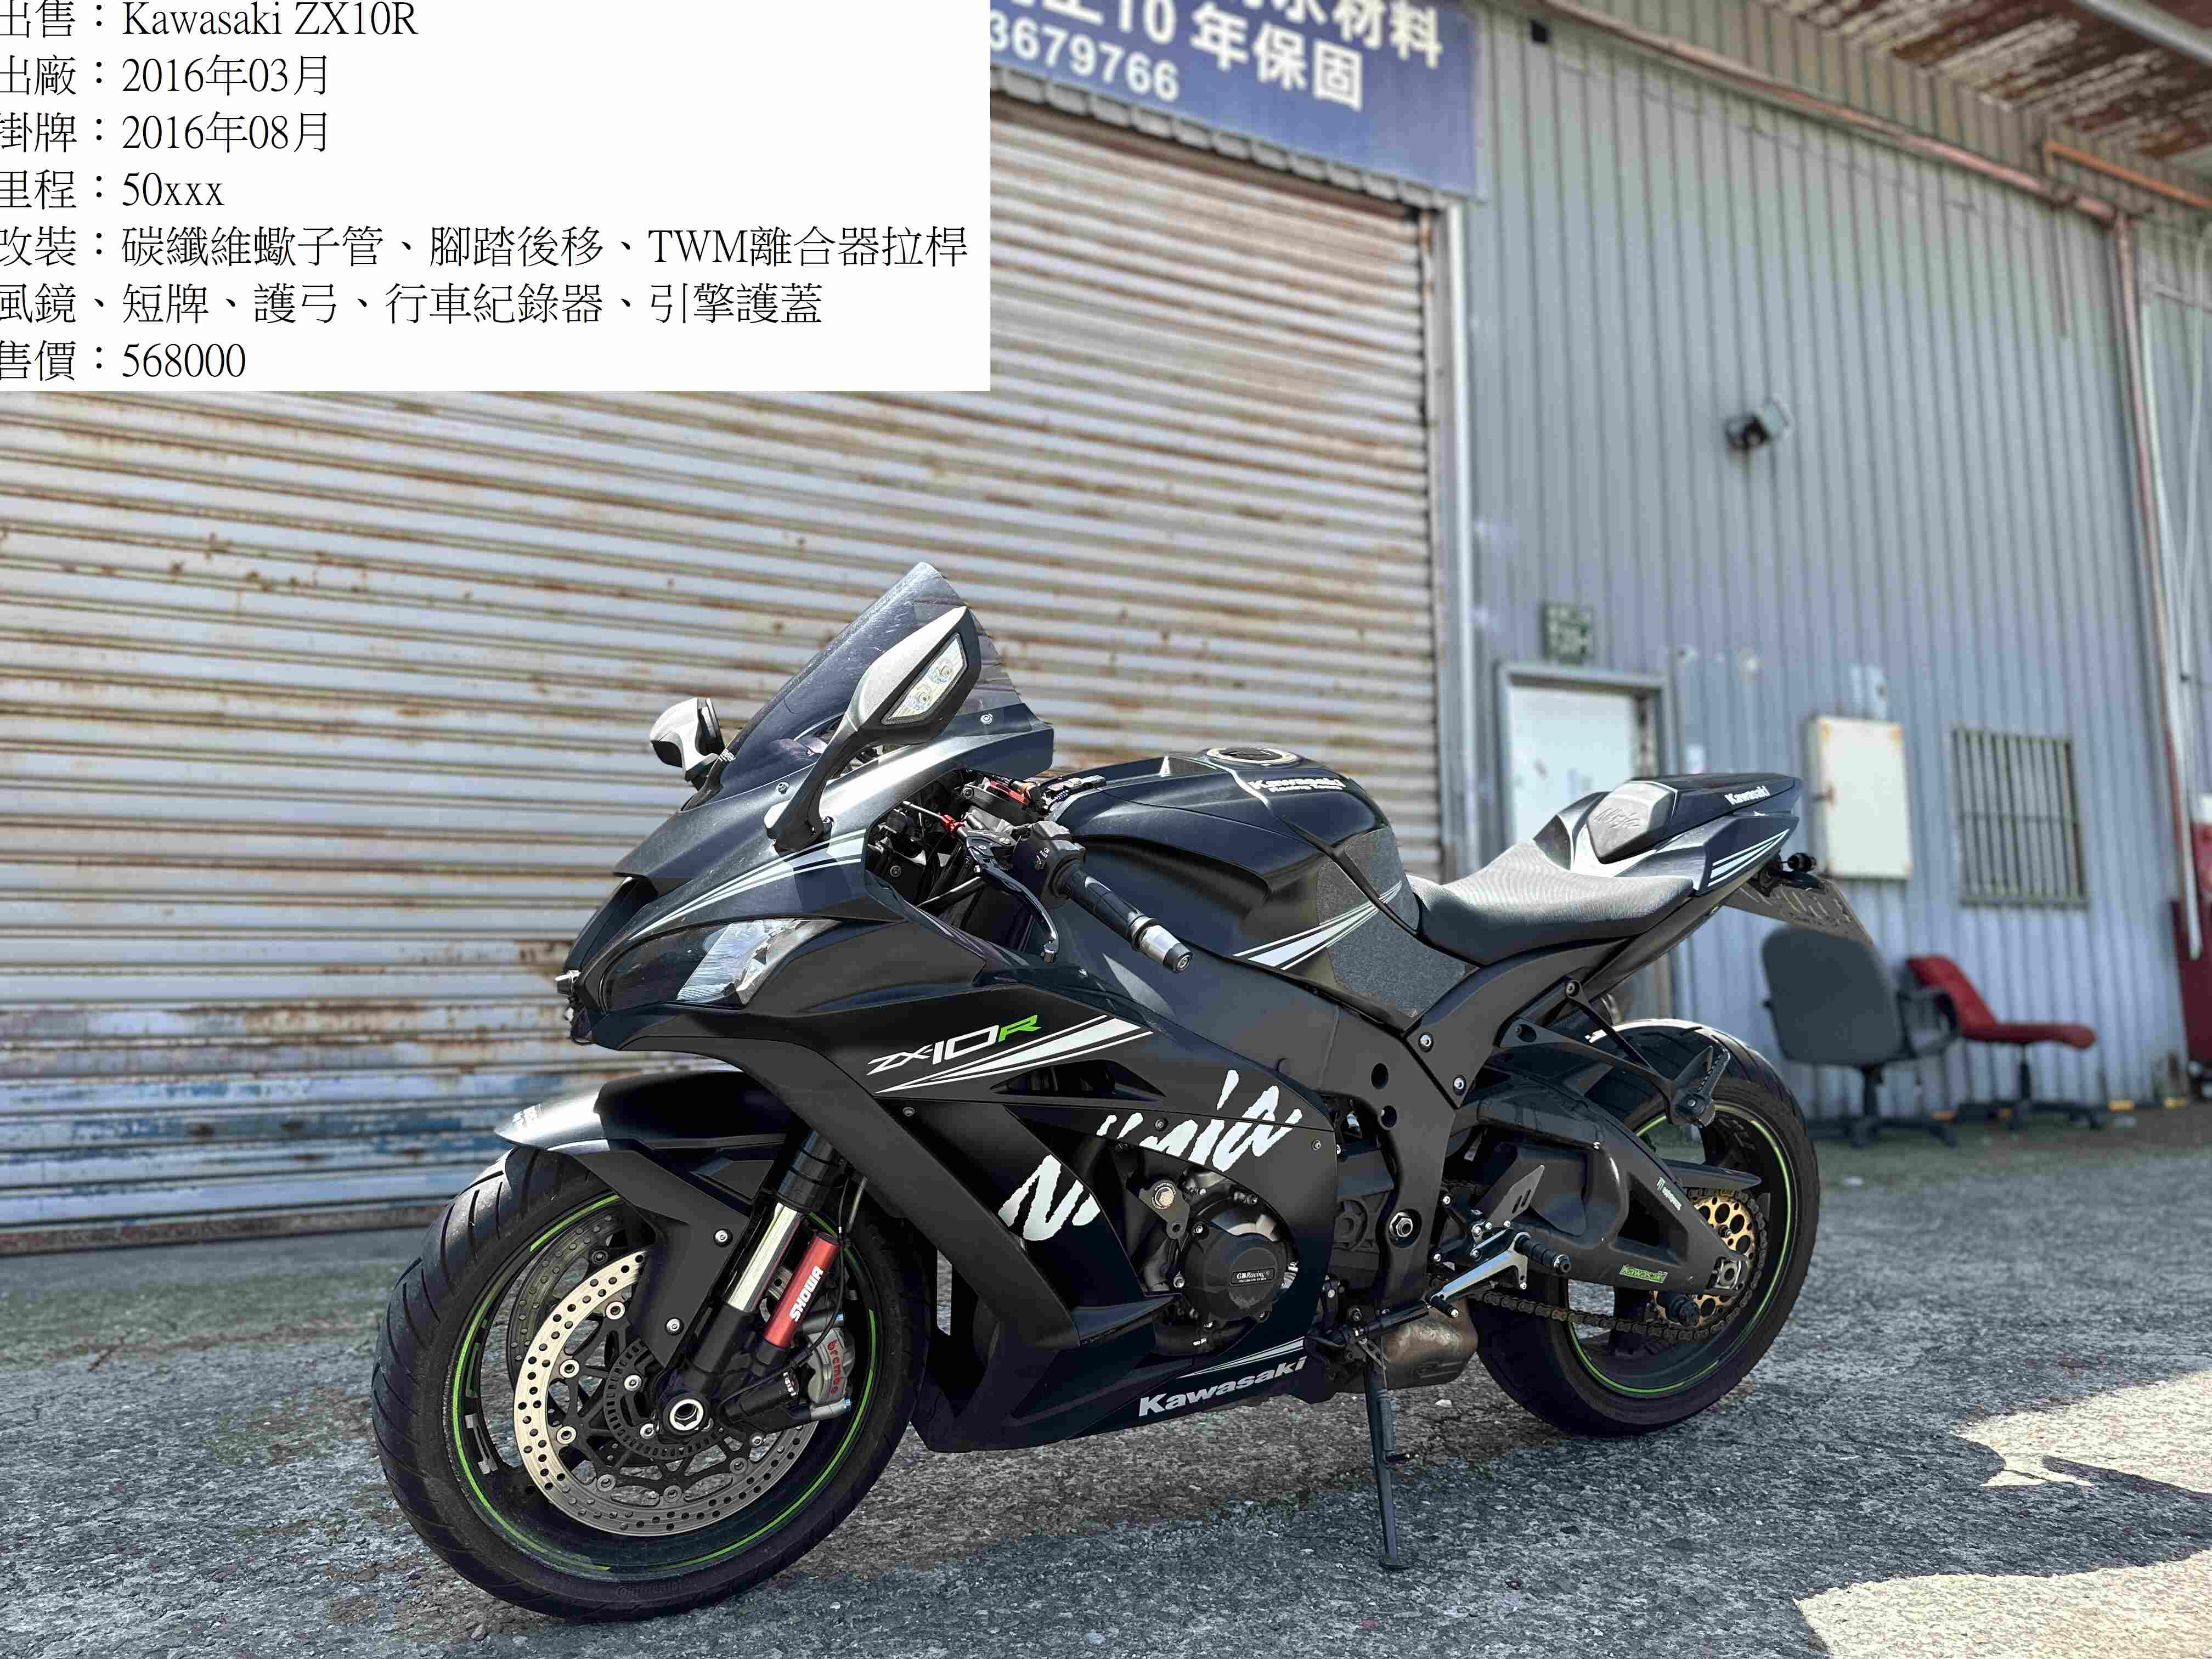 KAWASAKI NINJA ZX-10R - 中古/二手車出售中 湯姆重機 2016 Kawasaki ZX10R | 湯姆重機